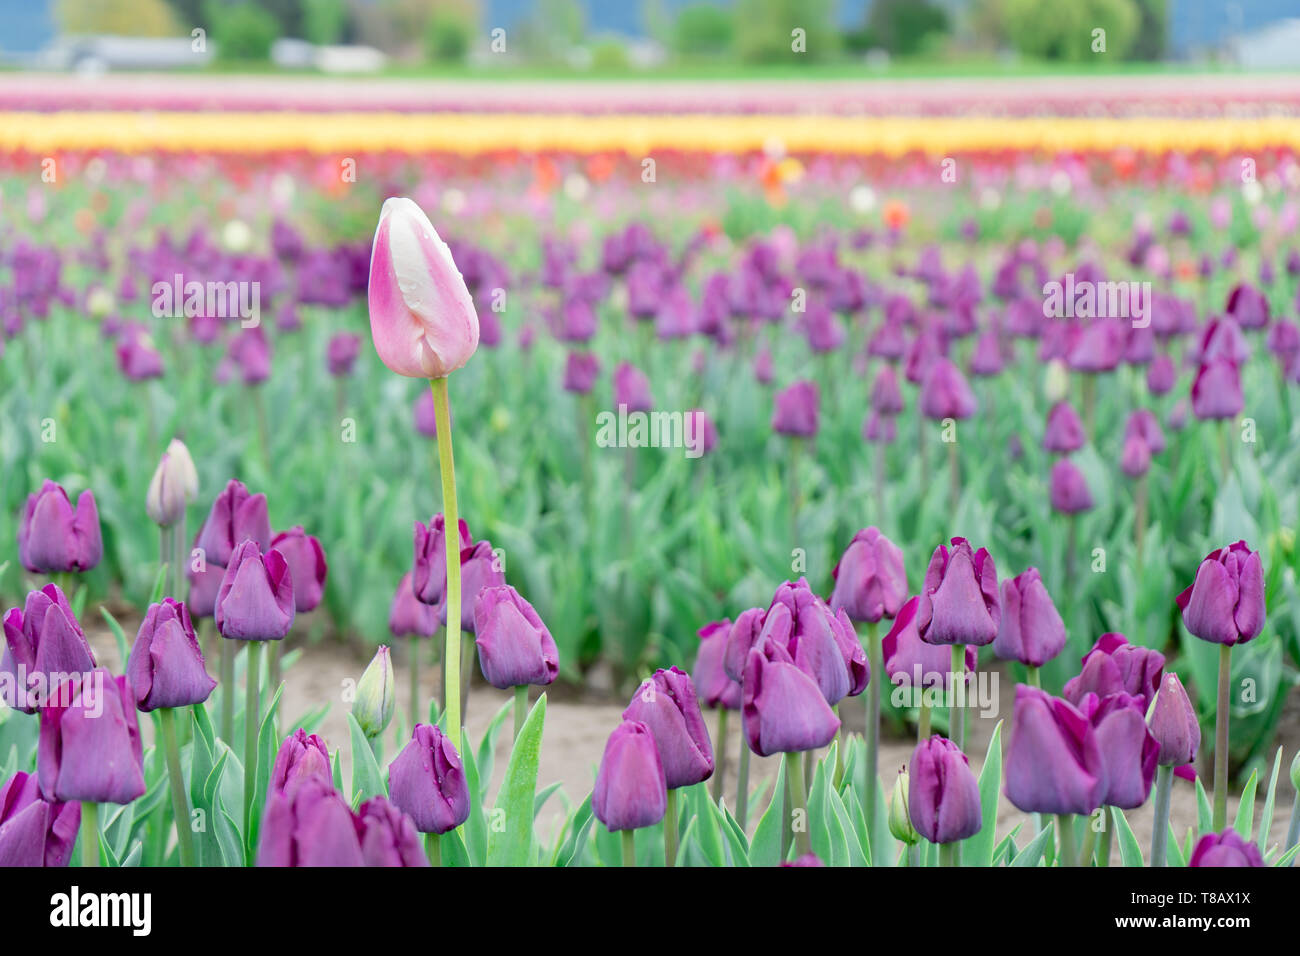 Bella, unico e diverso colore rosa e bianco tulip crescente di altezza in un campo di trionfo viola i tulipani, su un allevamento di fiore. Foto Stock